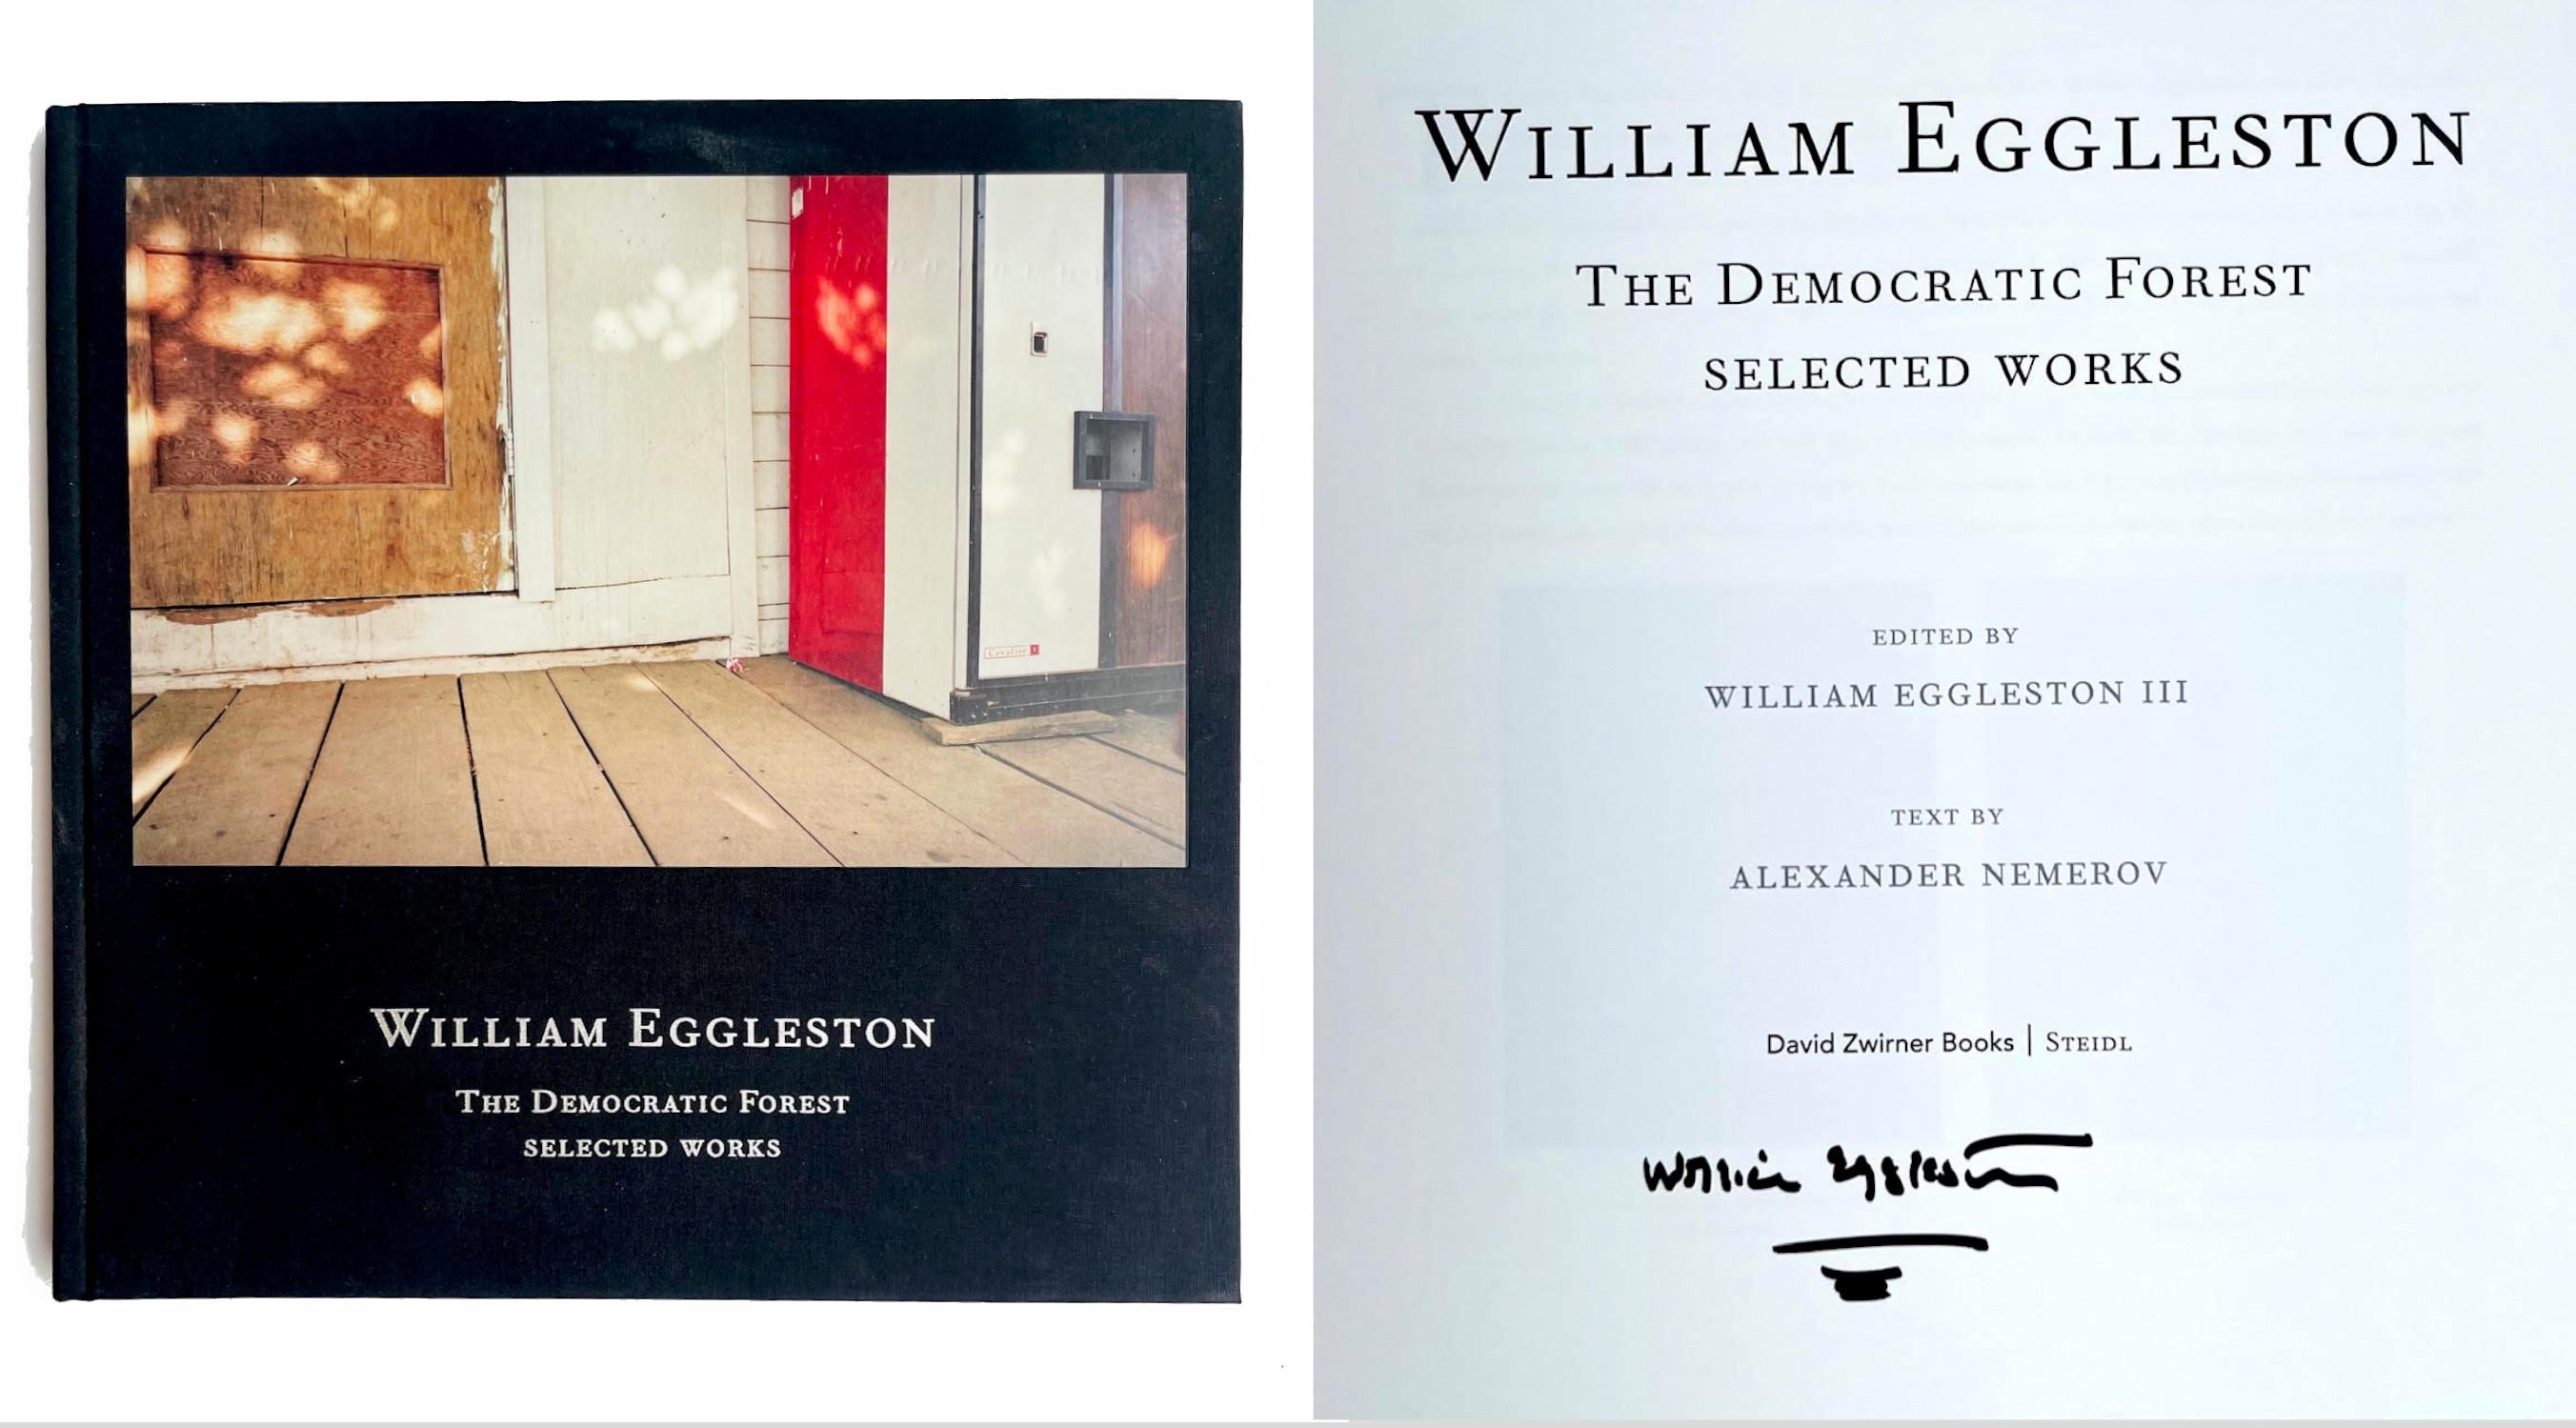 William Eggleston The Democratic Forest Works (Œuvres sélectionnées signées à la main)